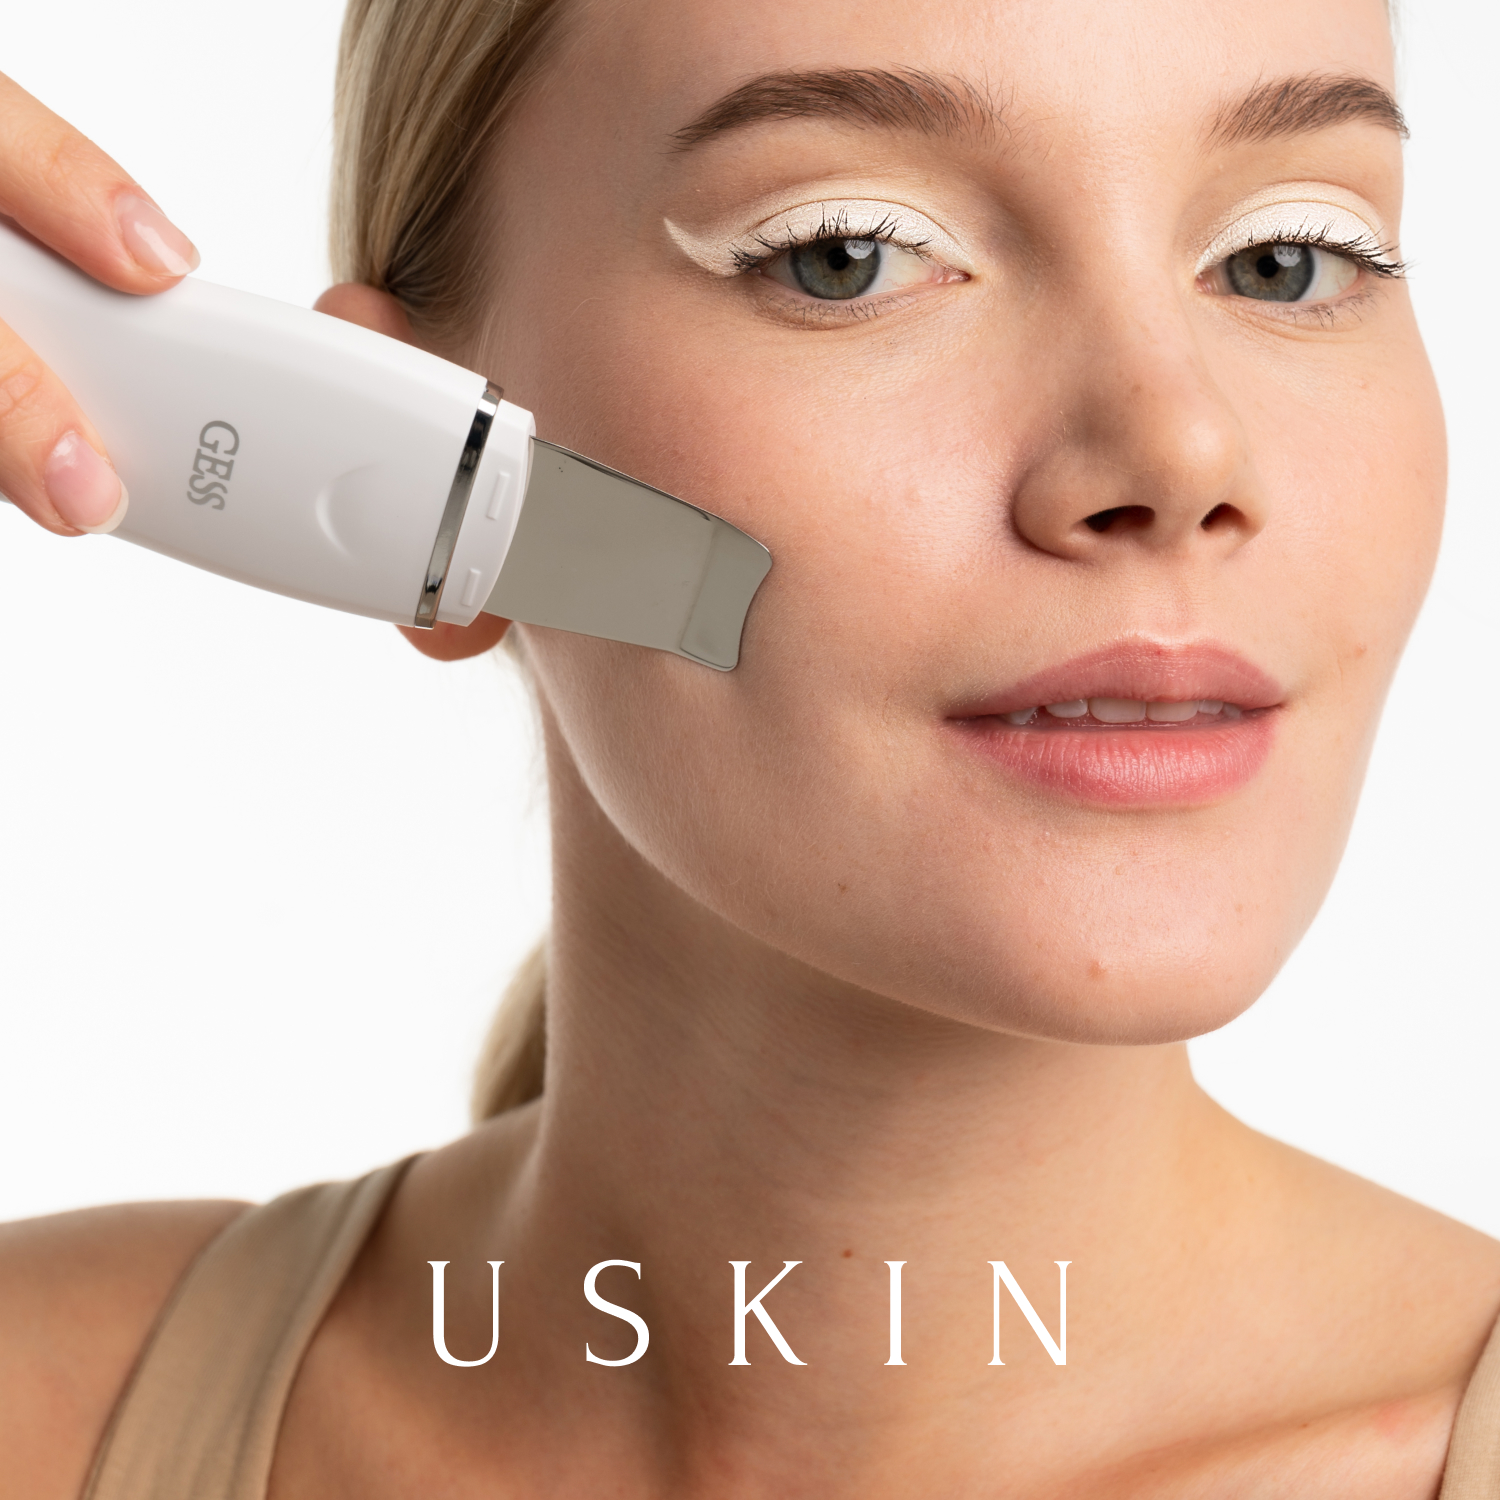 Аппарат для ультразвуковой чистки лица GESS uSkin asianabeauty аппарат для ультразвуковой чистки и ухода за лицом